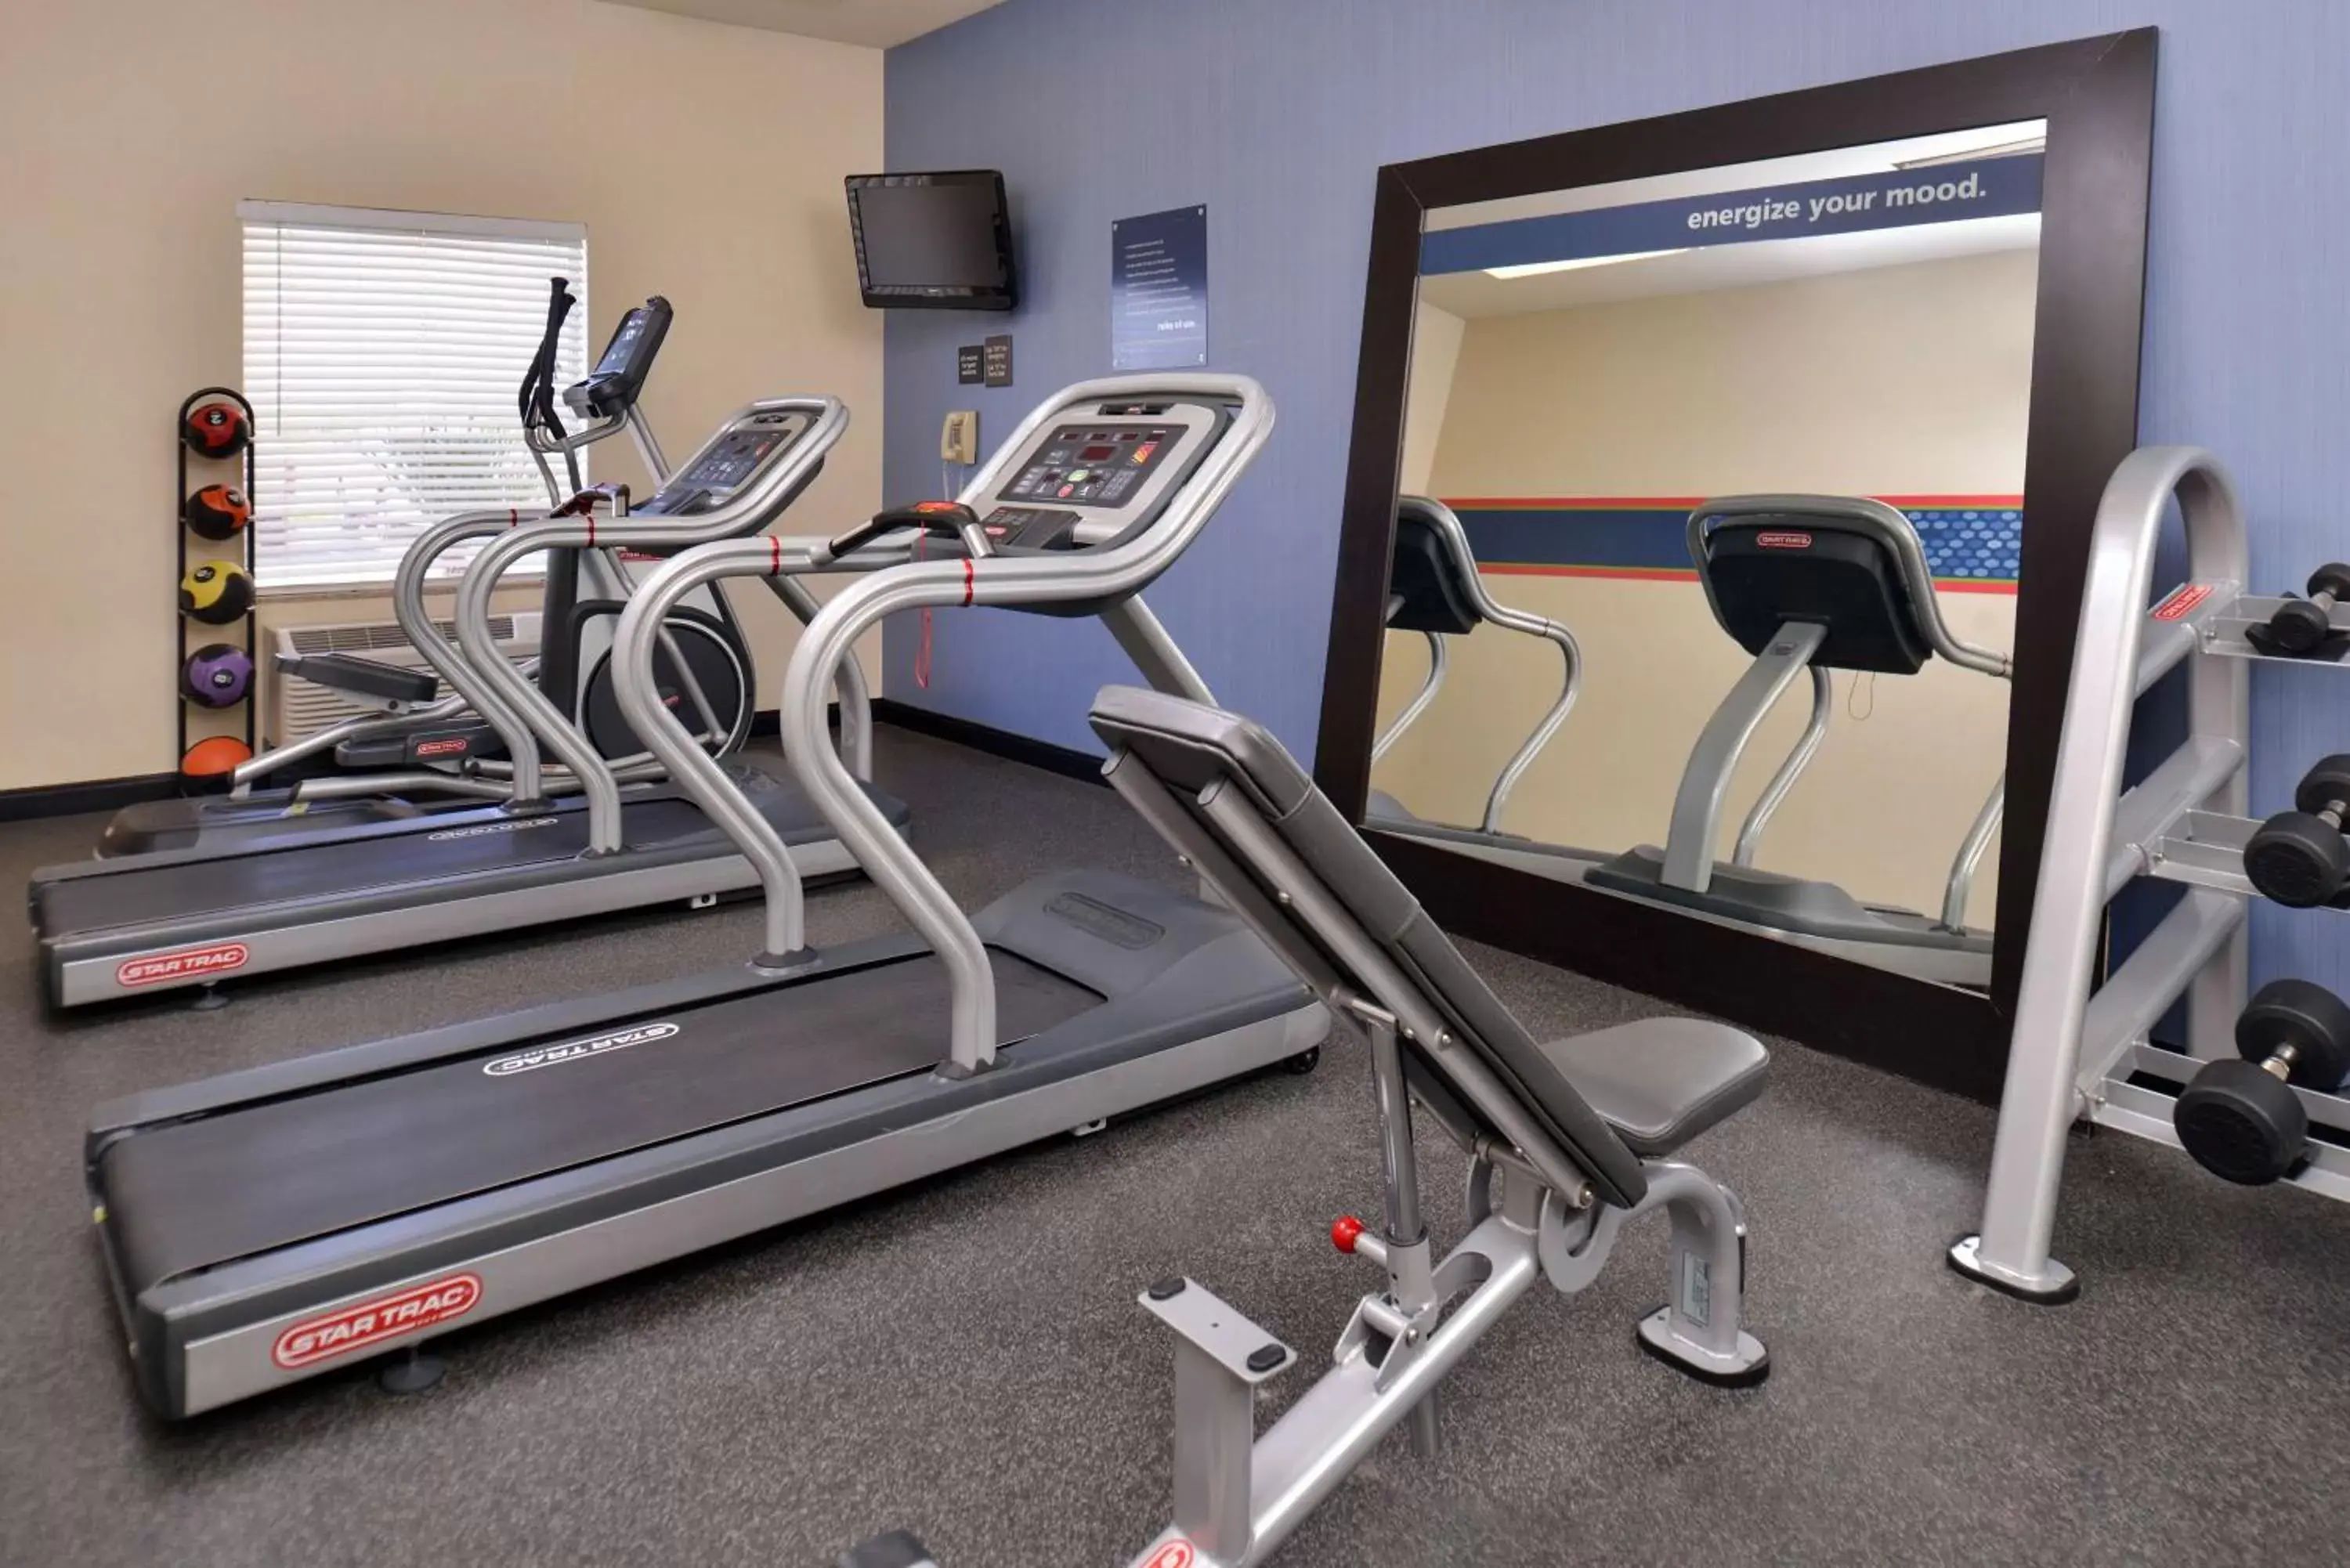 Fitness centre/facilities, Fitness Center/Facilities in Hampton Inn Van Horn